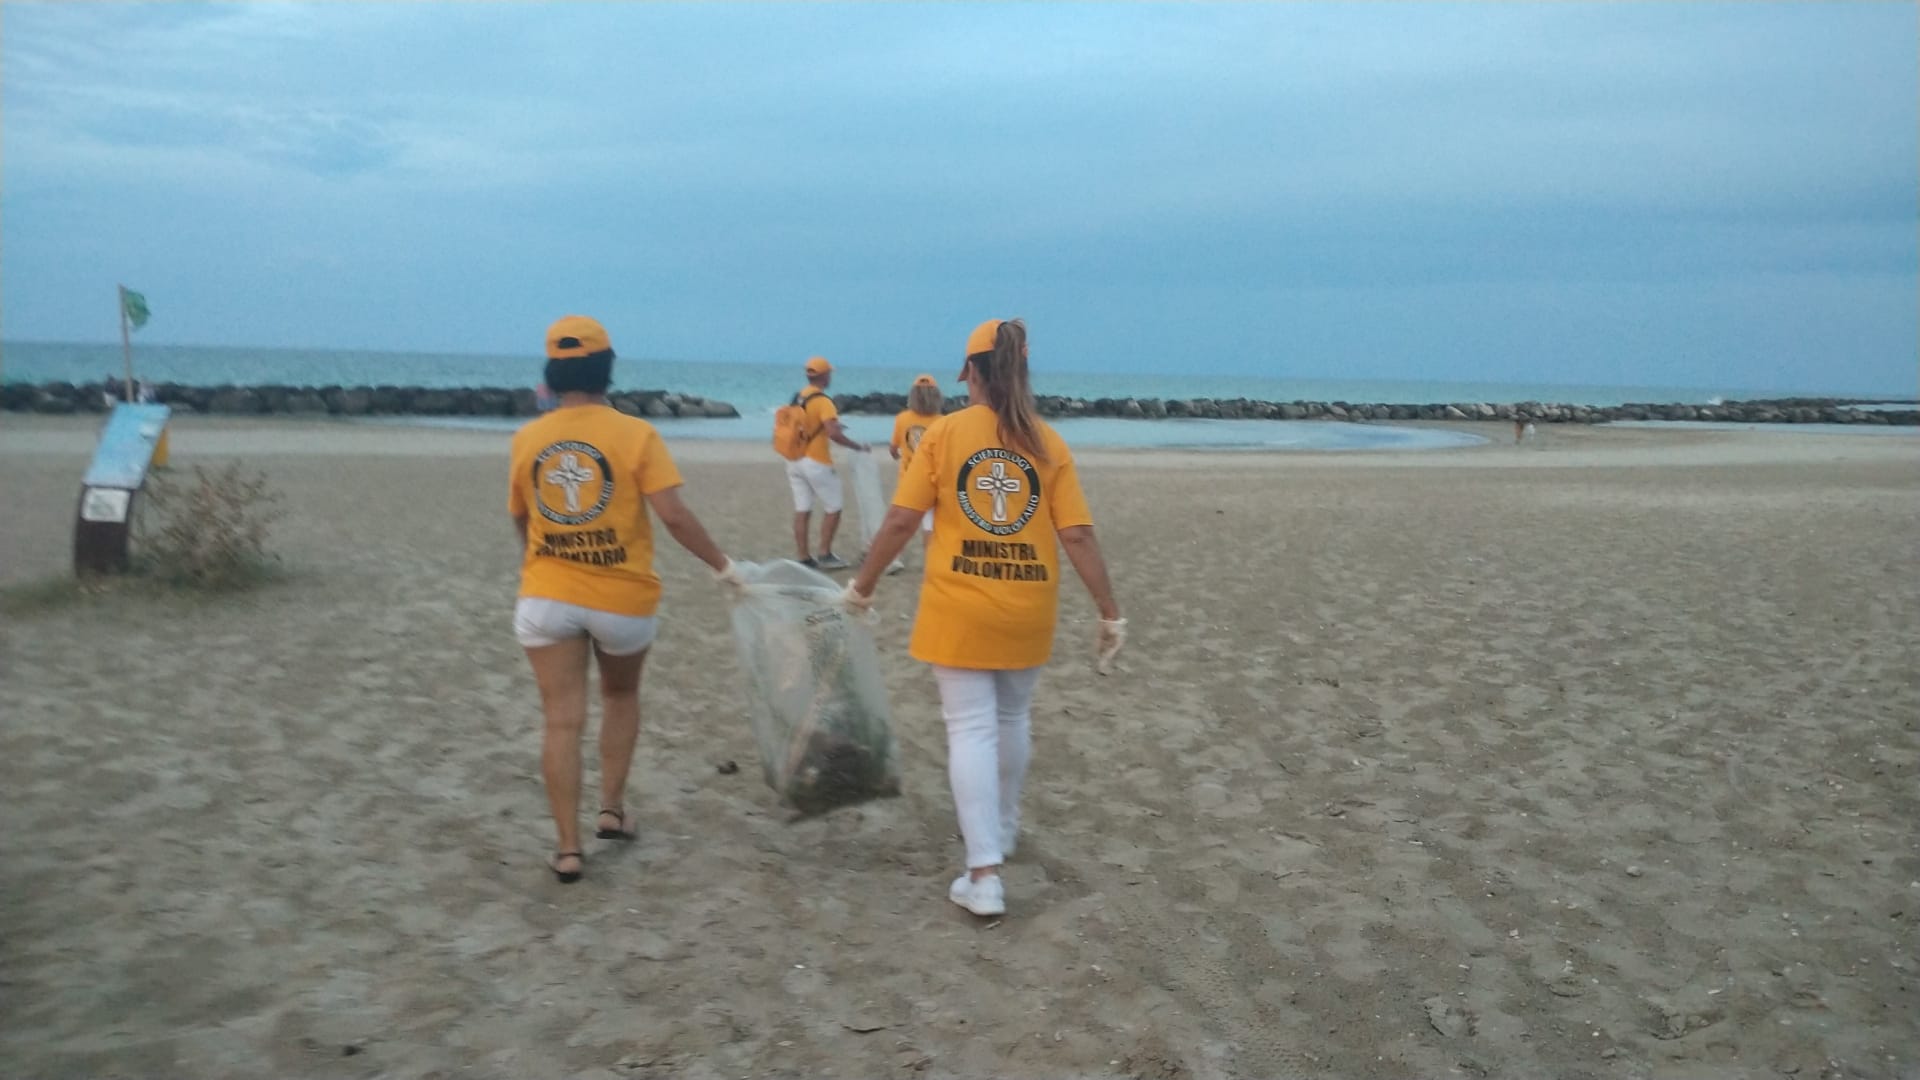 Foto 1 - A CESANO volontari all’opera: raccolti due bei sacchi tra plastica e spazzatura nell’arenile e sul lungomare!